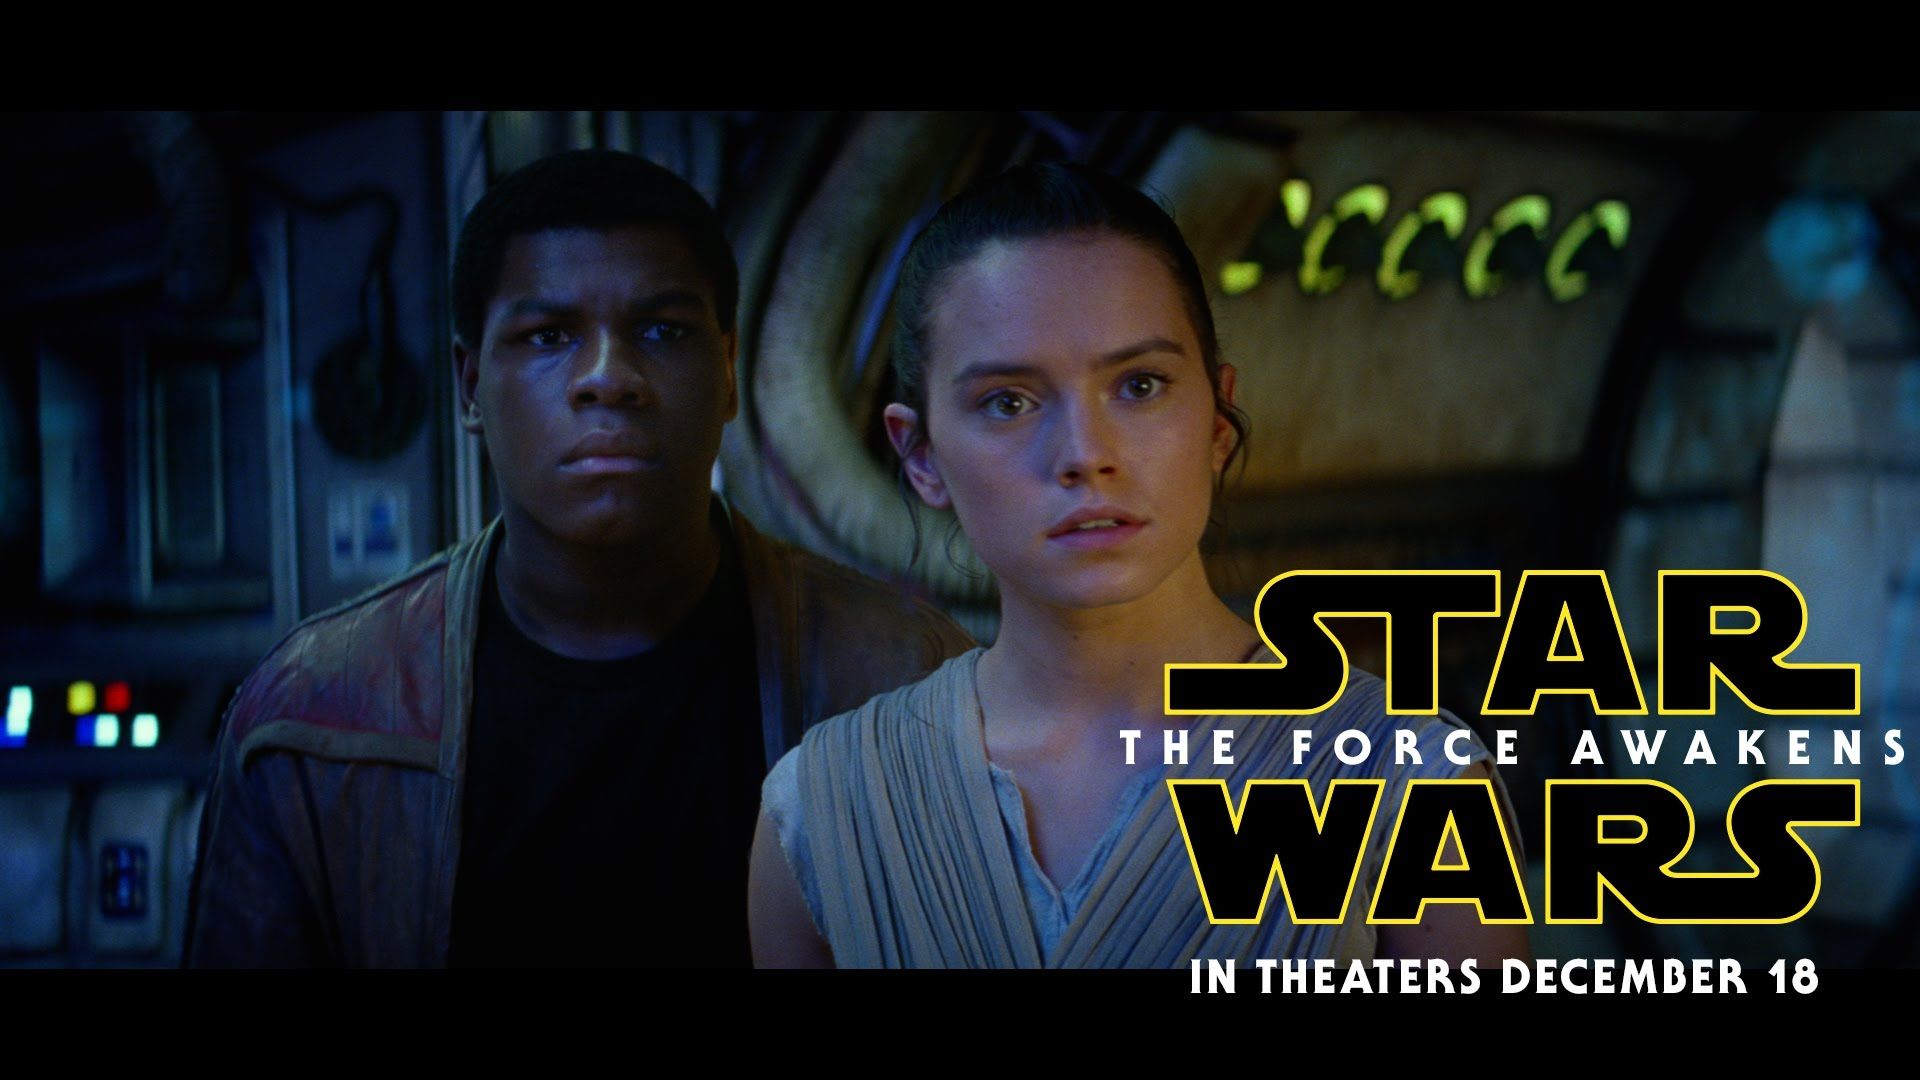 Dal 13 Aprile Star Wars: Il Risveglio della Forza sarà disponibile in Home Video!